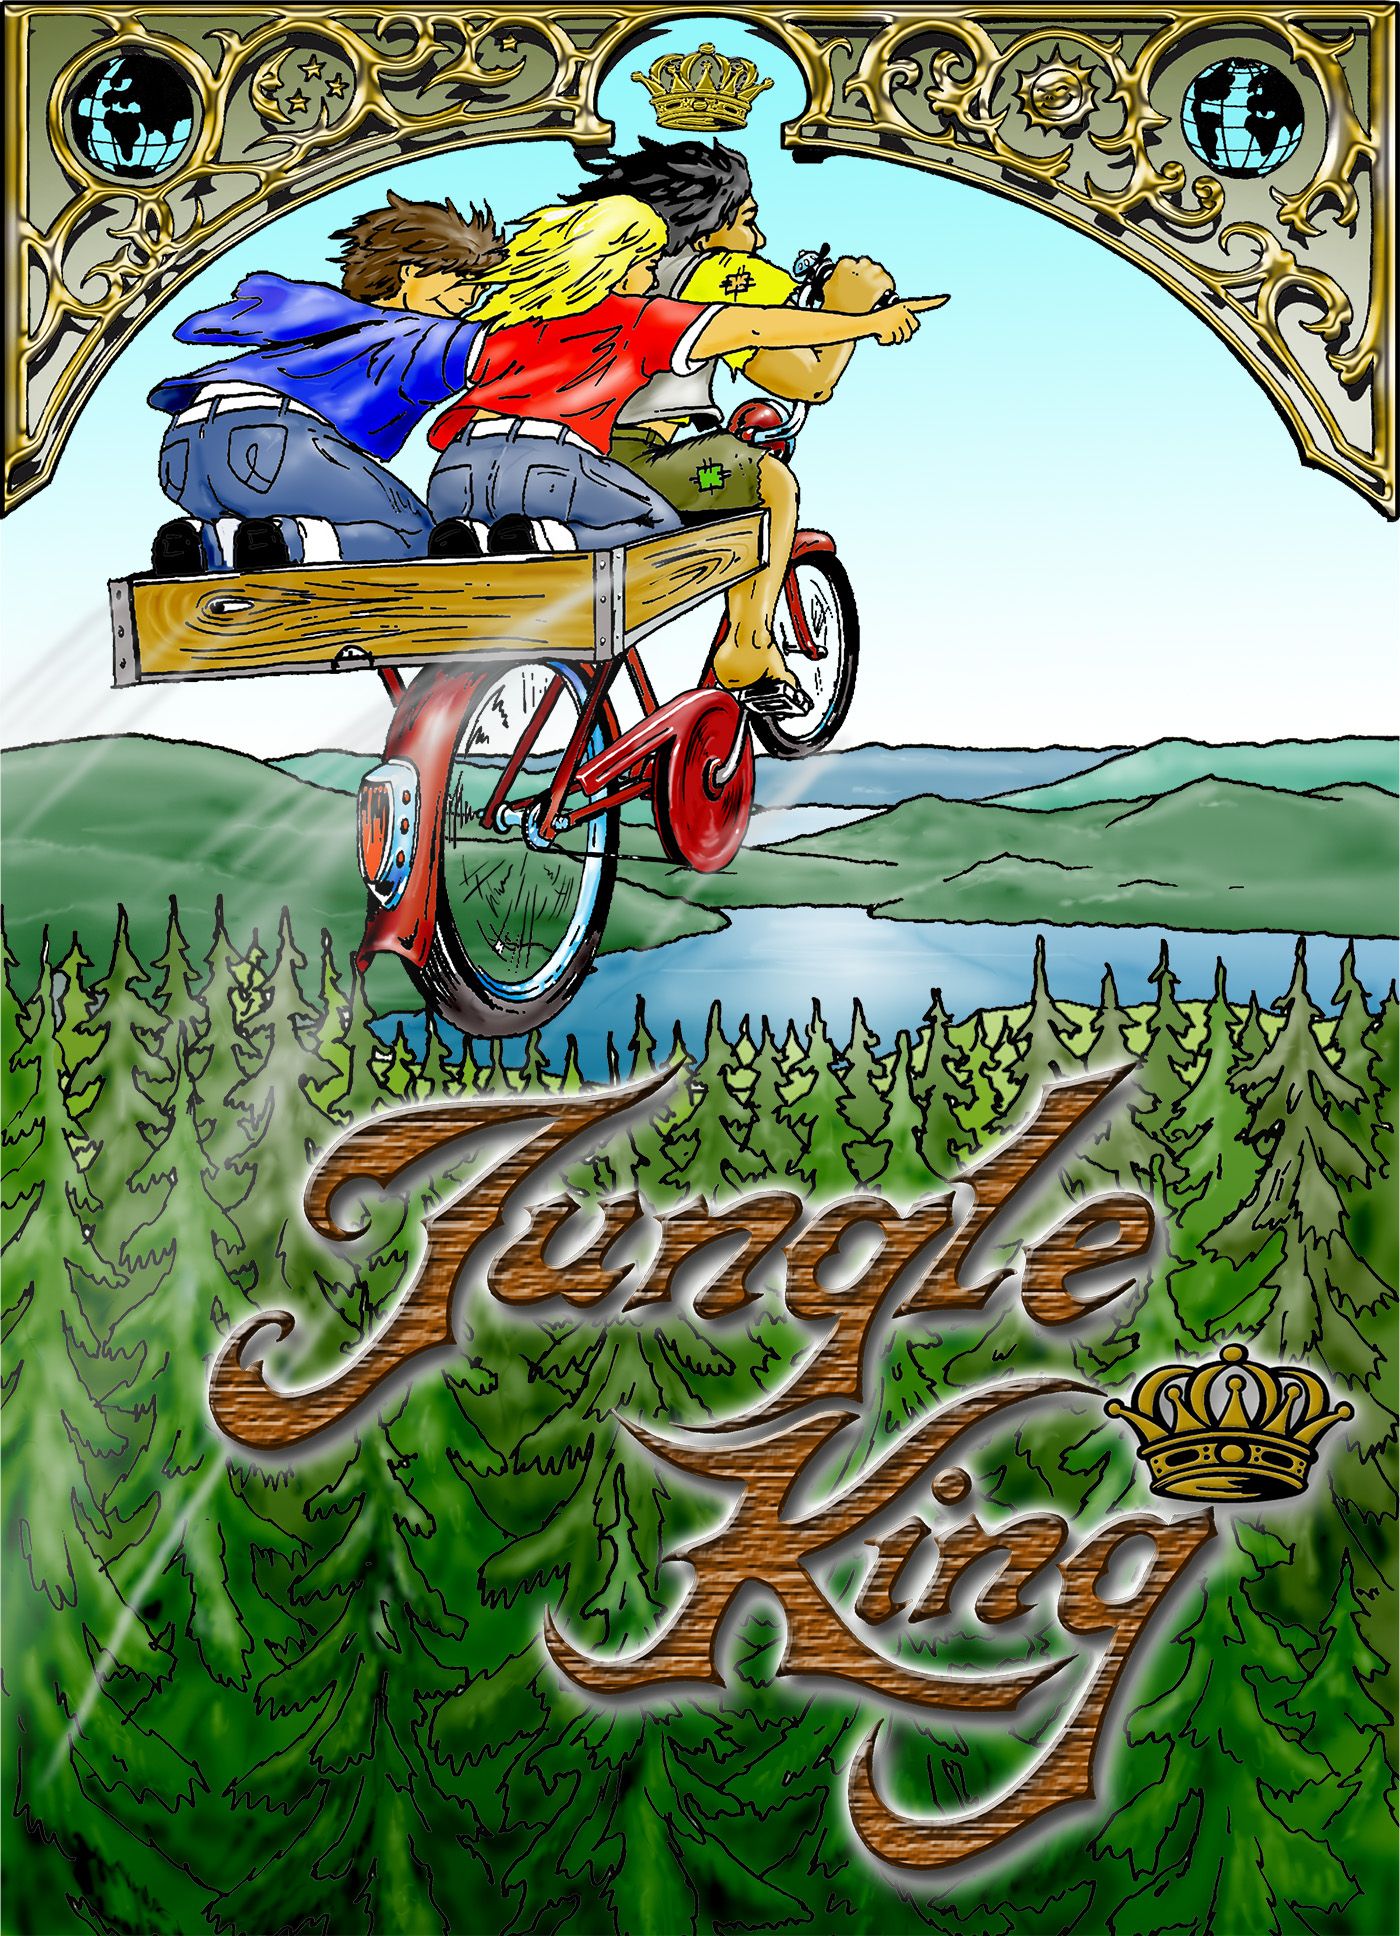 Jungle King in Brazil, e-bog af Erik Johansson